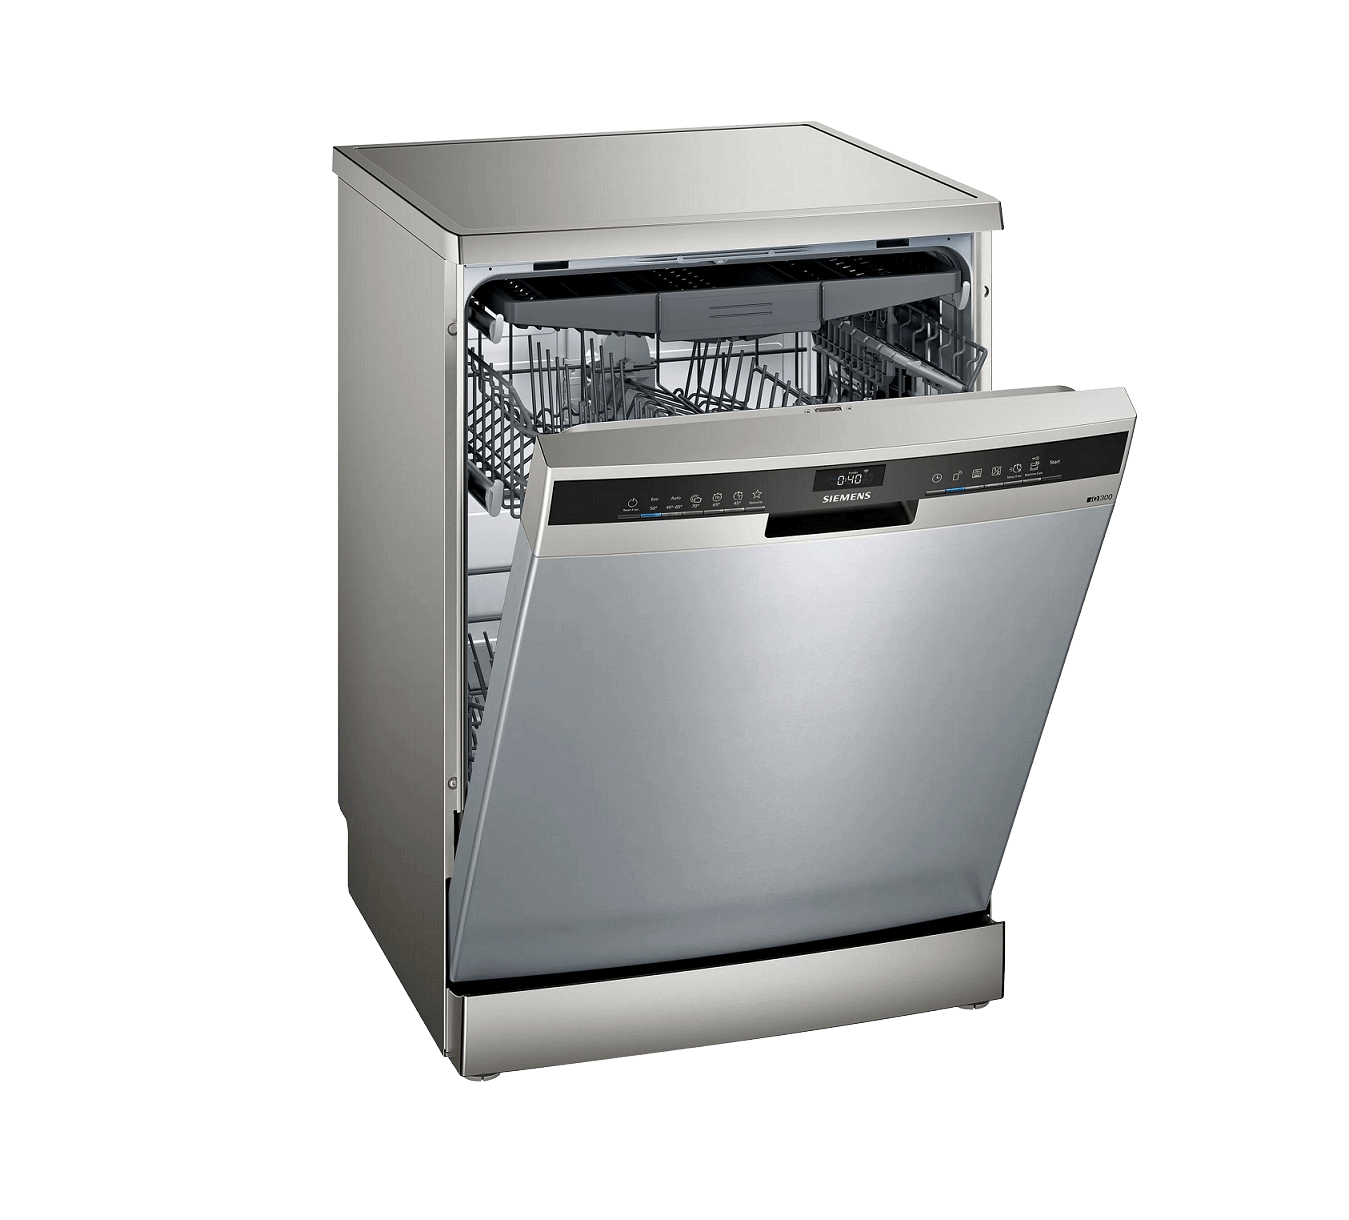 Lave-vaisselle Siemens iQ300 SN23HI42VE - Chardenon Équipe votre